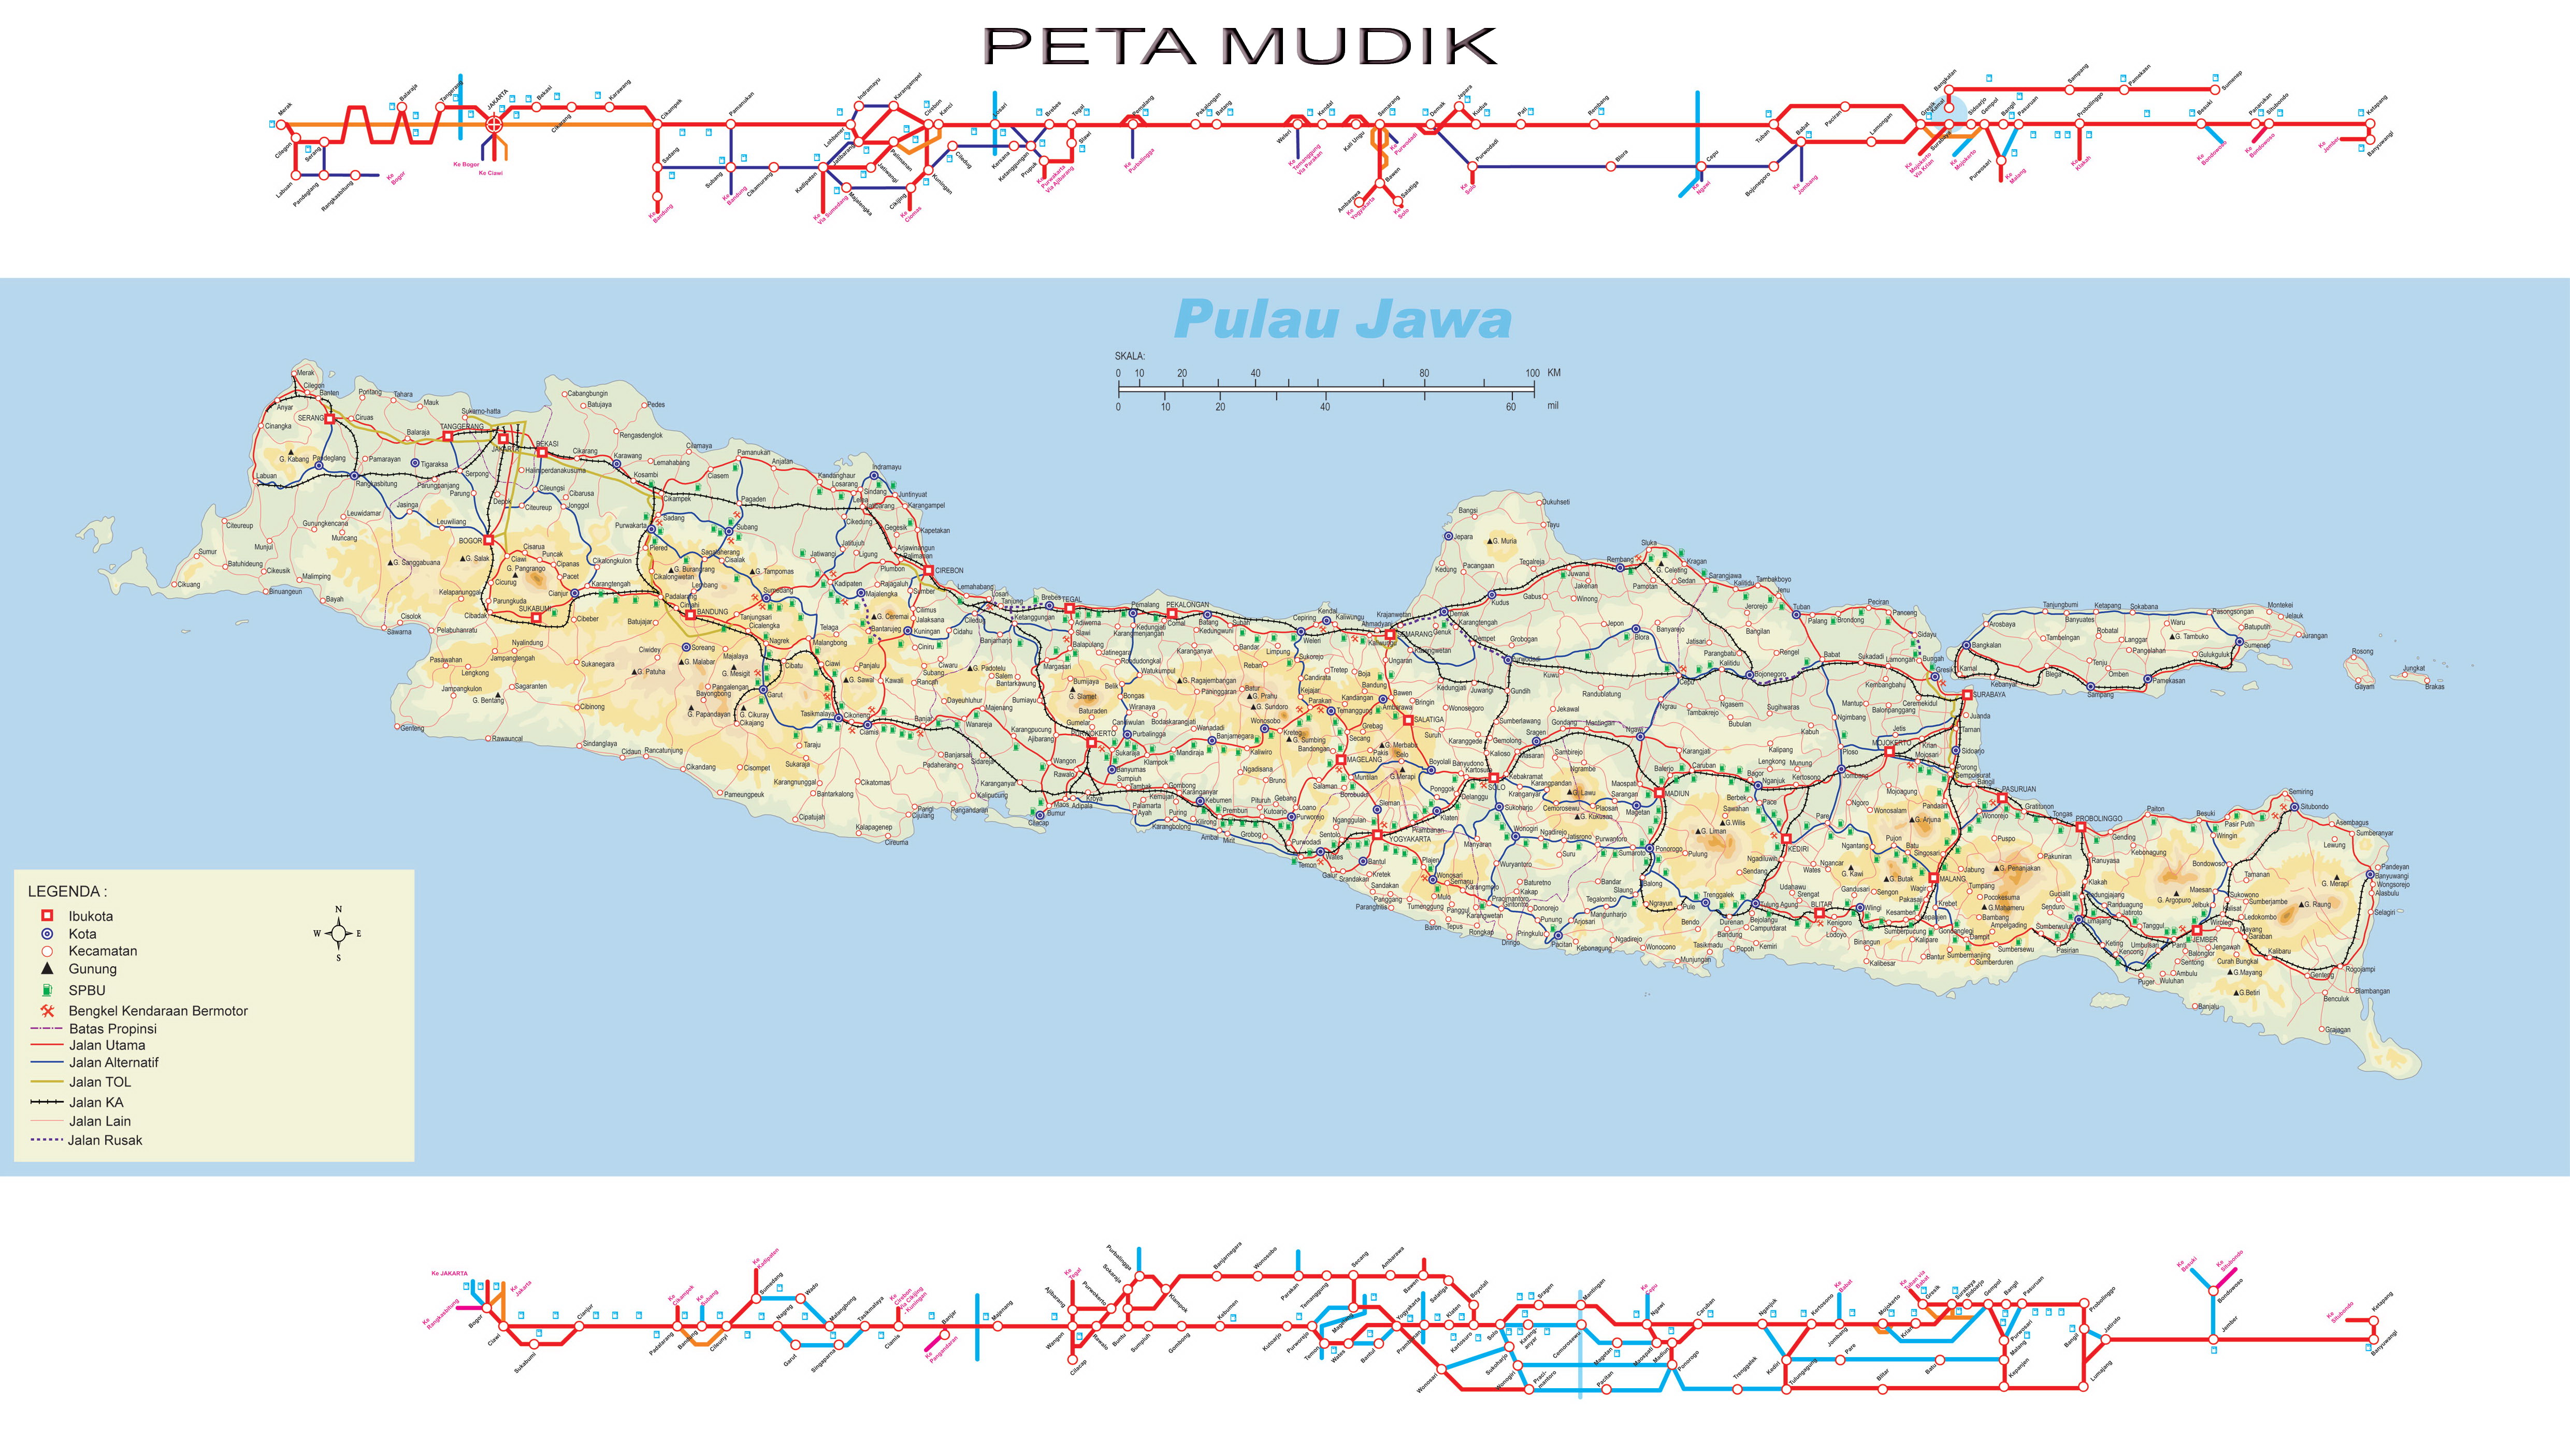 Peta Kota Mudik Pulau Jawa Hd Jumlah Lebaran Terbesar Jakarta